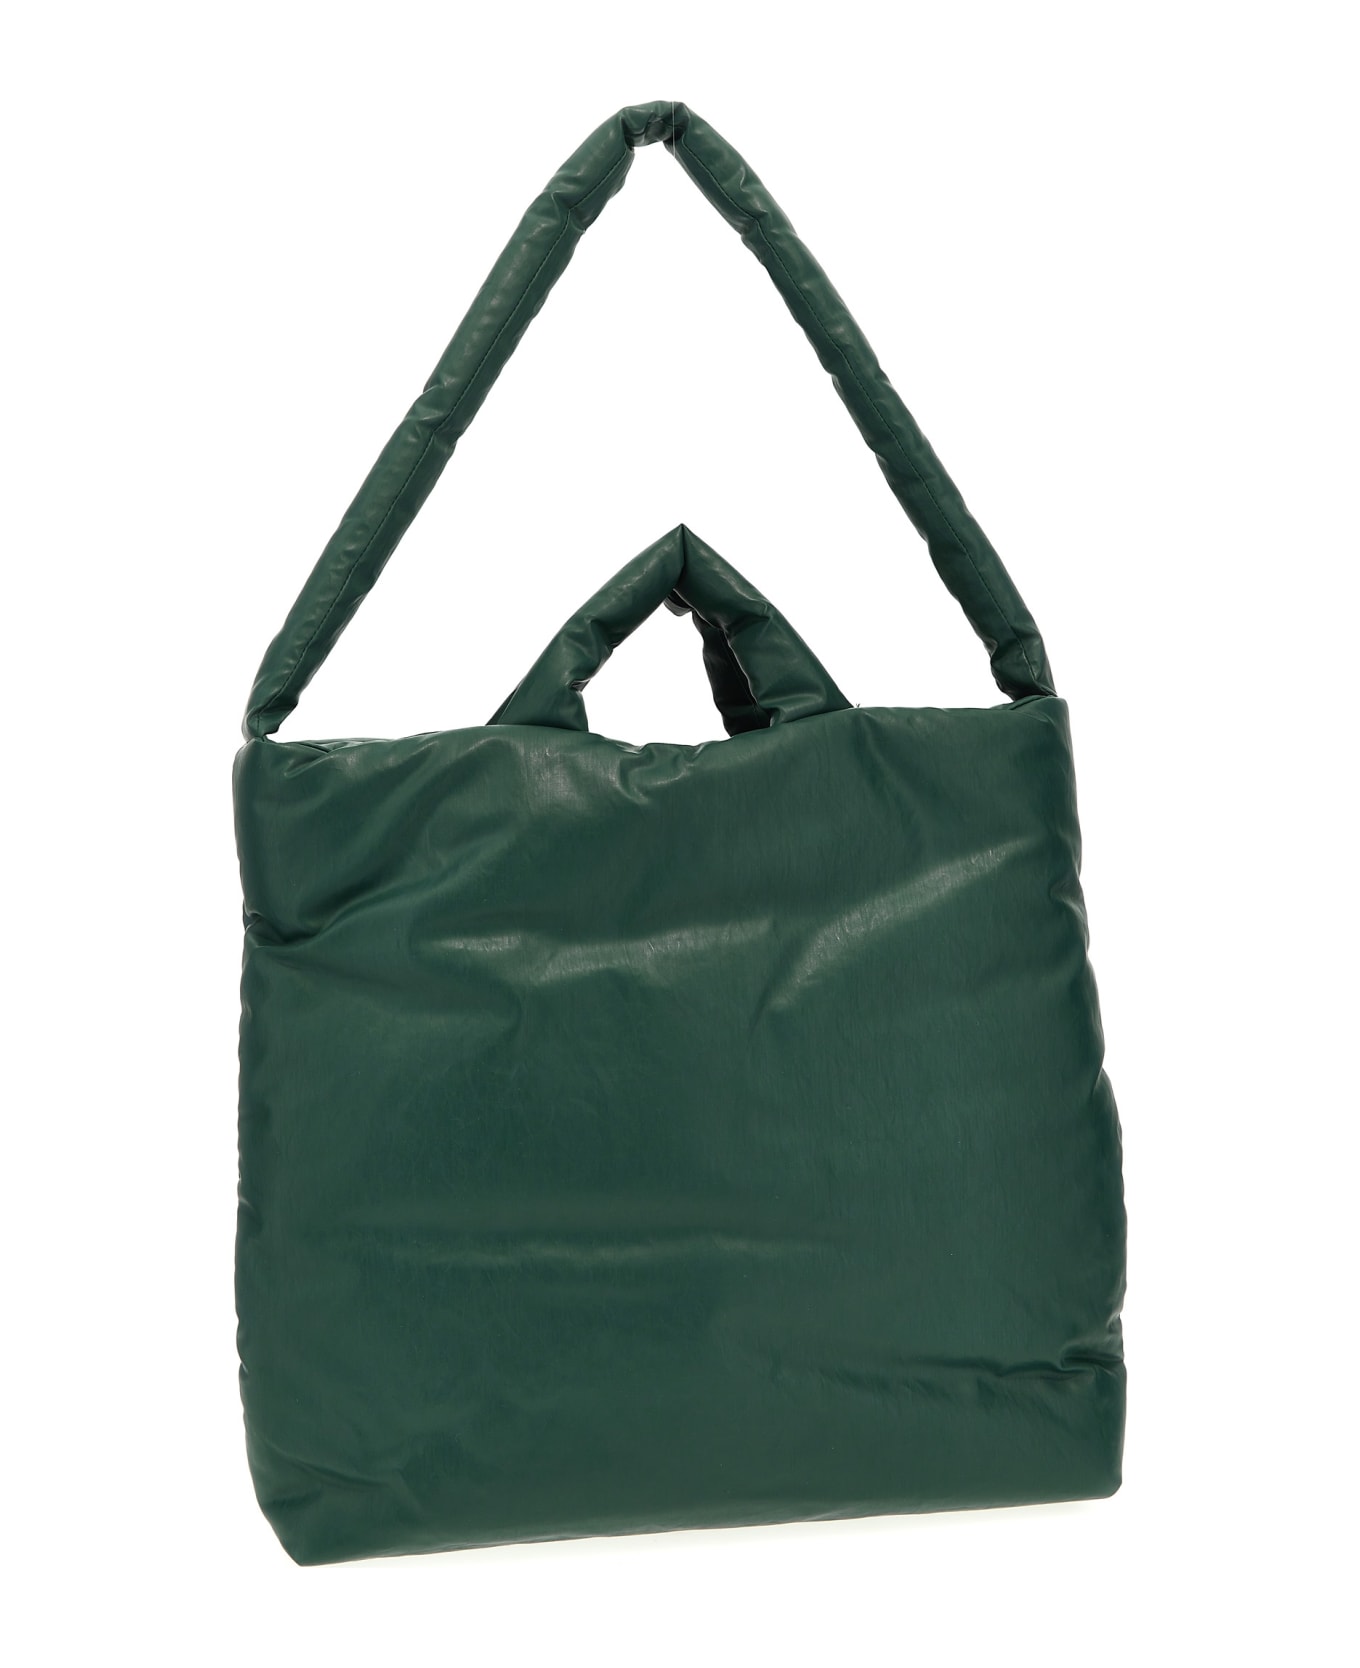 KASSL Editions 'pillow Medium' Shopping Bag - Green